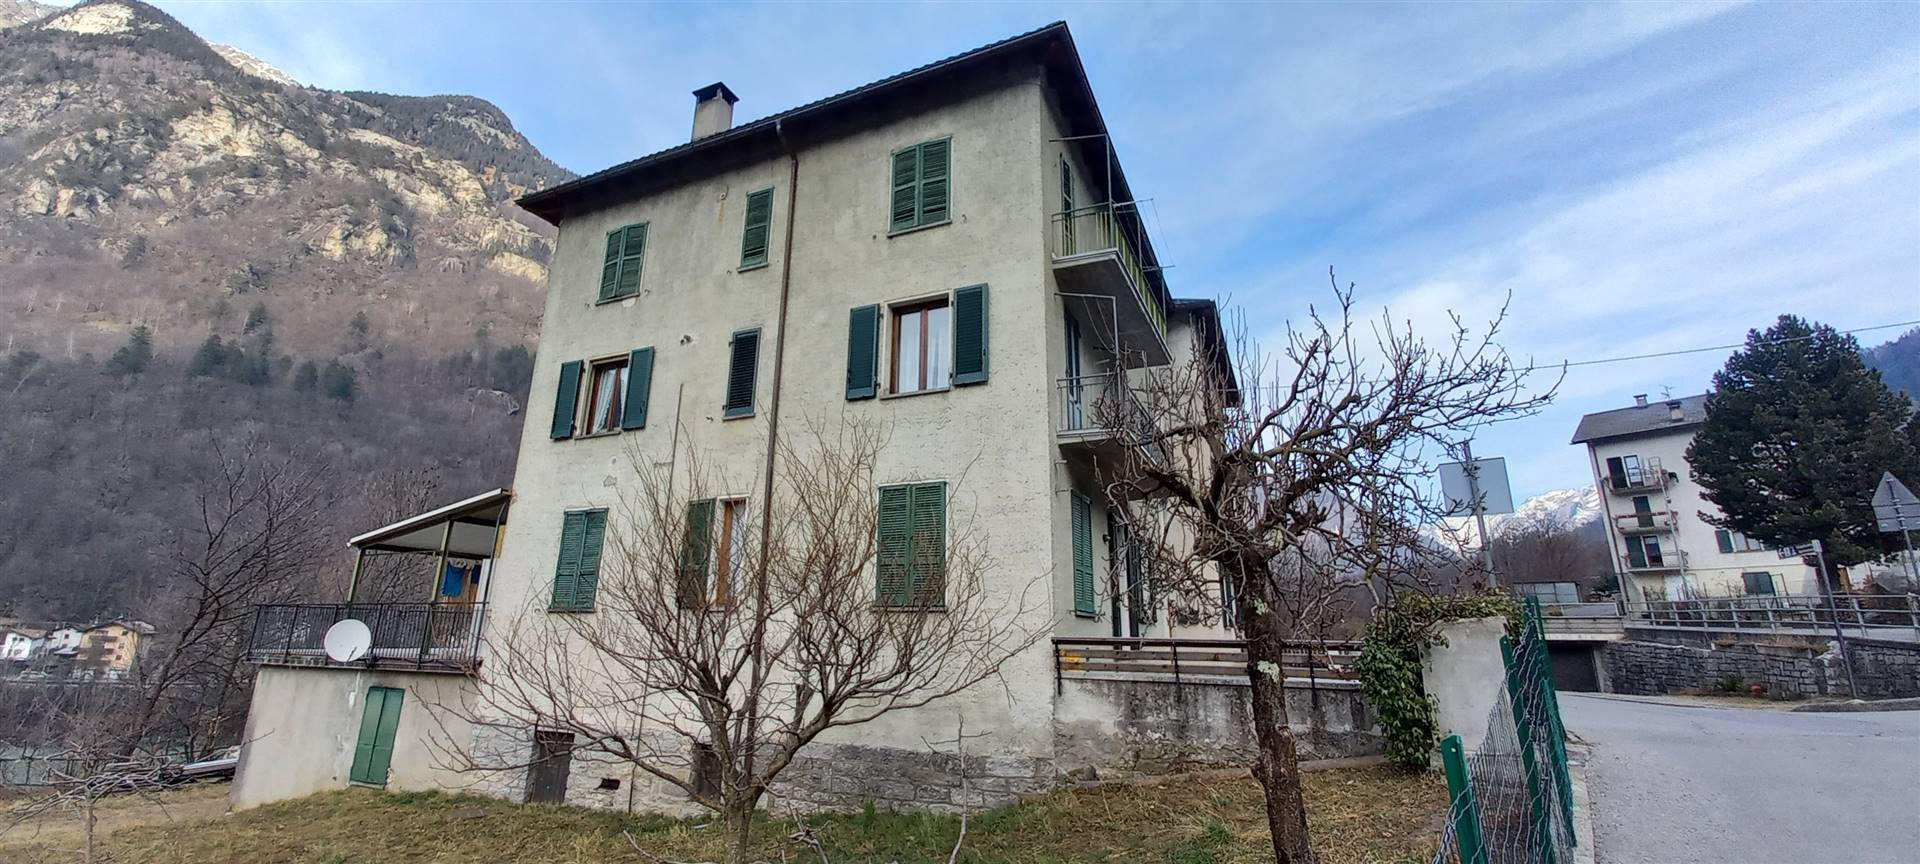 Appartamento in vendita a Villa di Chiavenna, 4 locali, zona Barnaba, prezzo € 95.000 | PortaleAgenzieImmobiliari.it